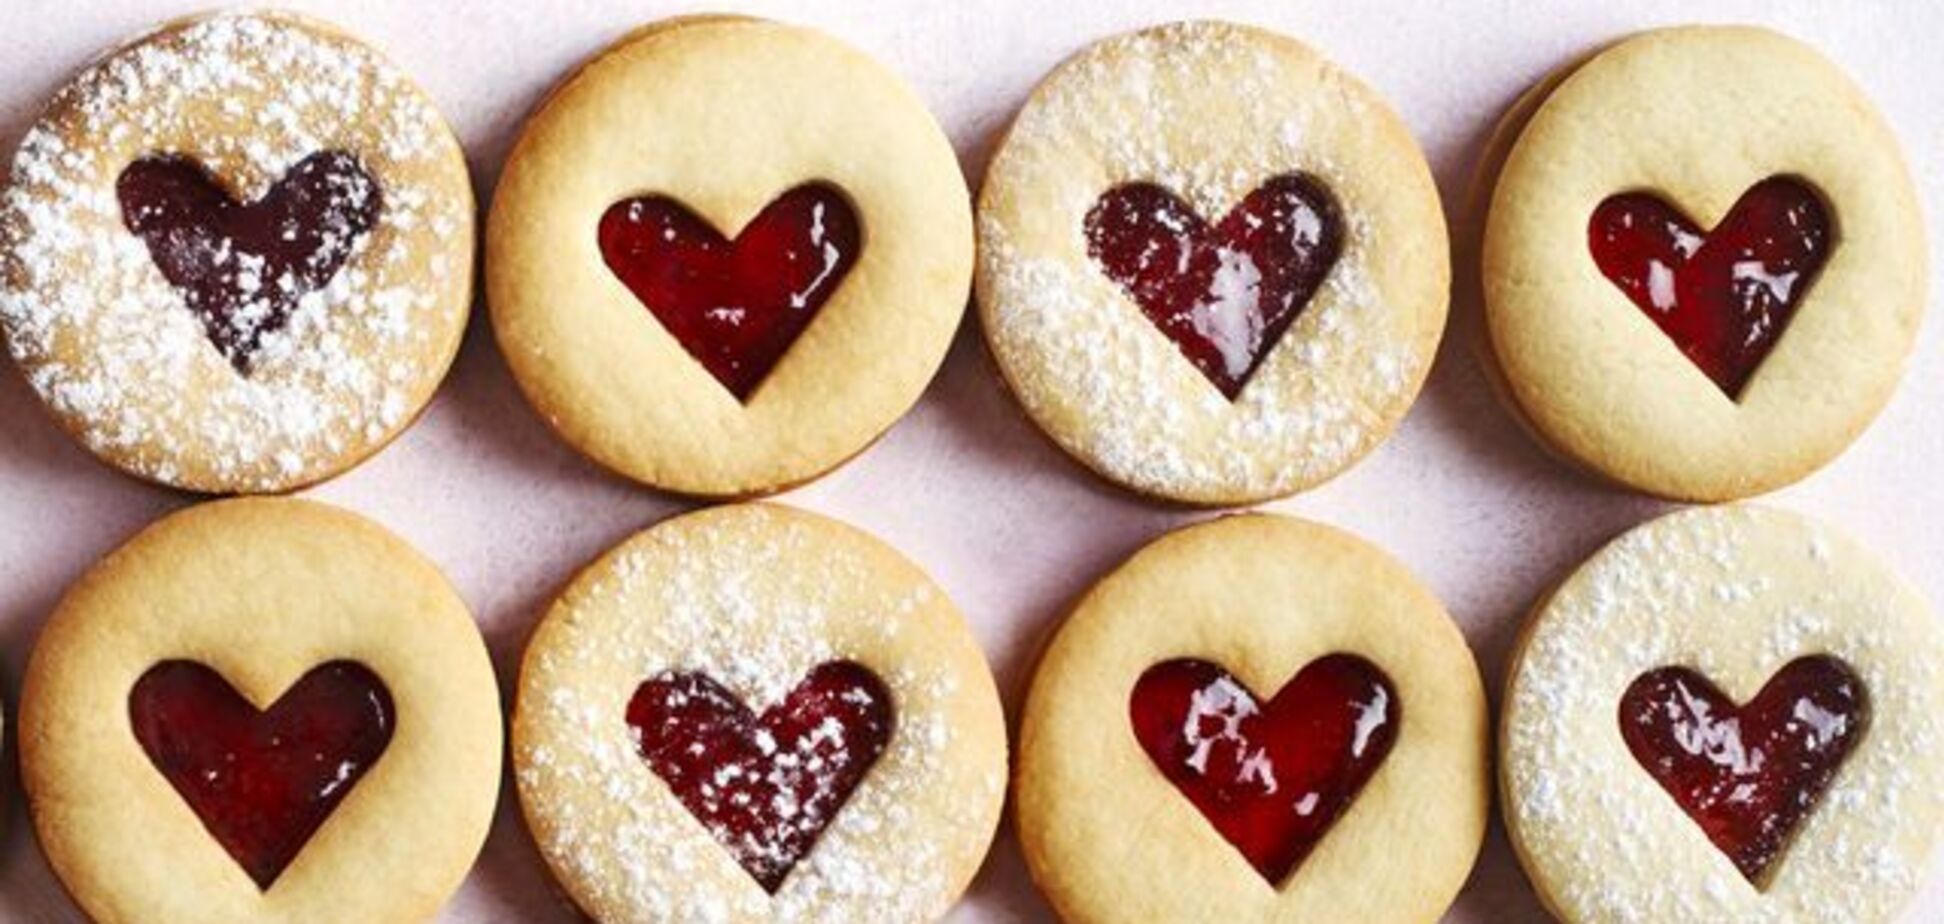 Печенье вместо валентинки: как удивить любимого человека вкусным сюрпризом